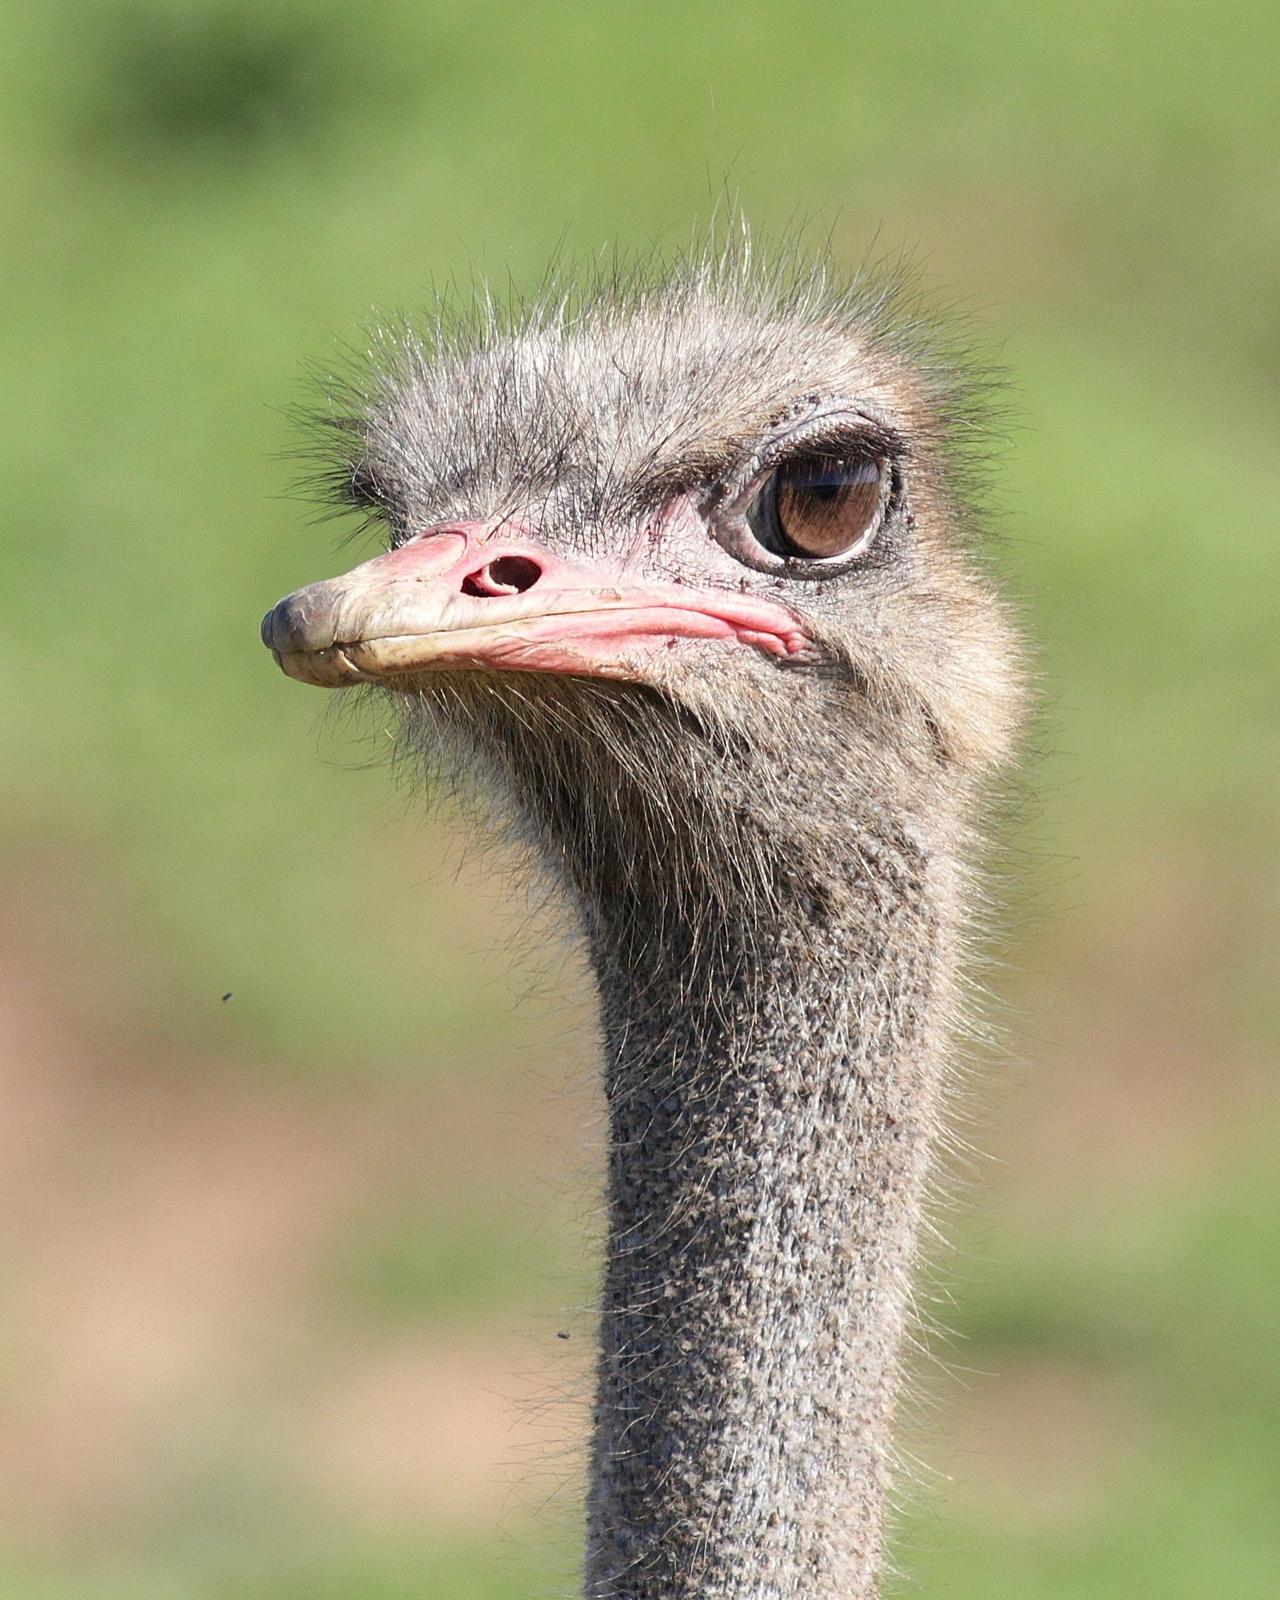 Common Ostrich Photo by Alex Lamoreaux